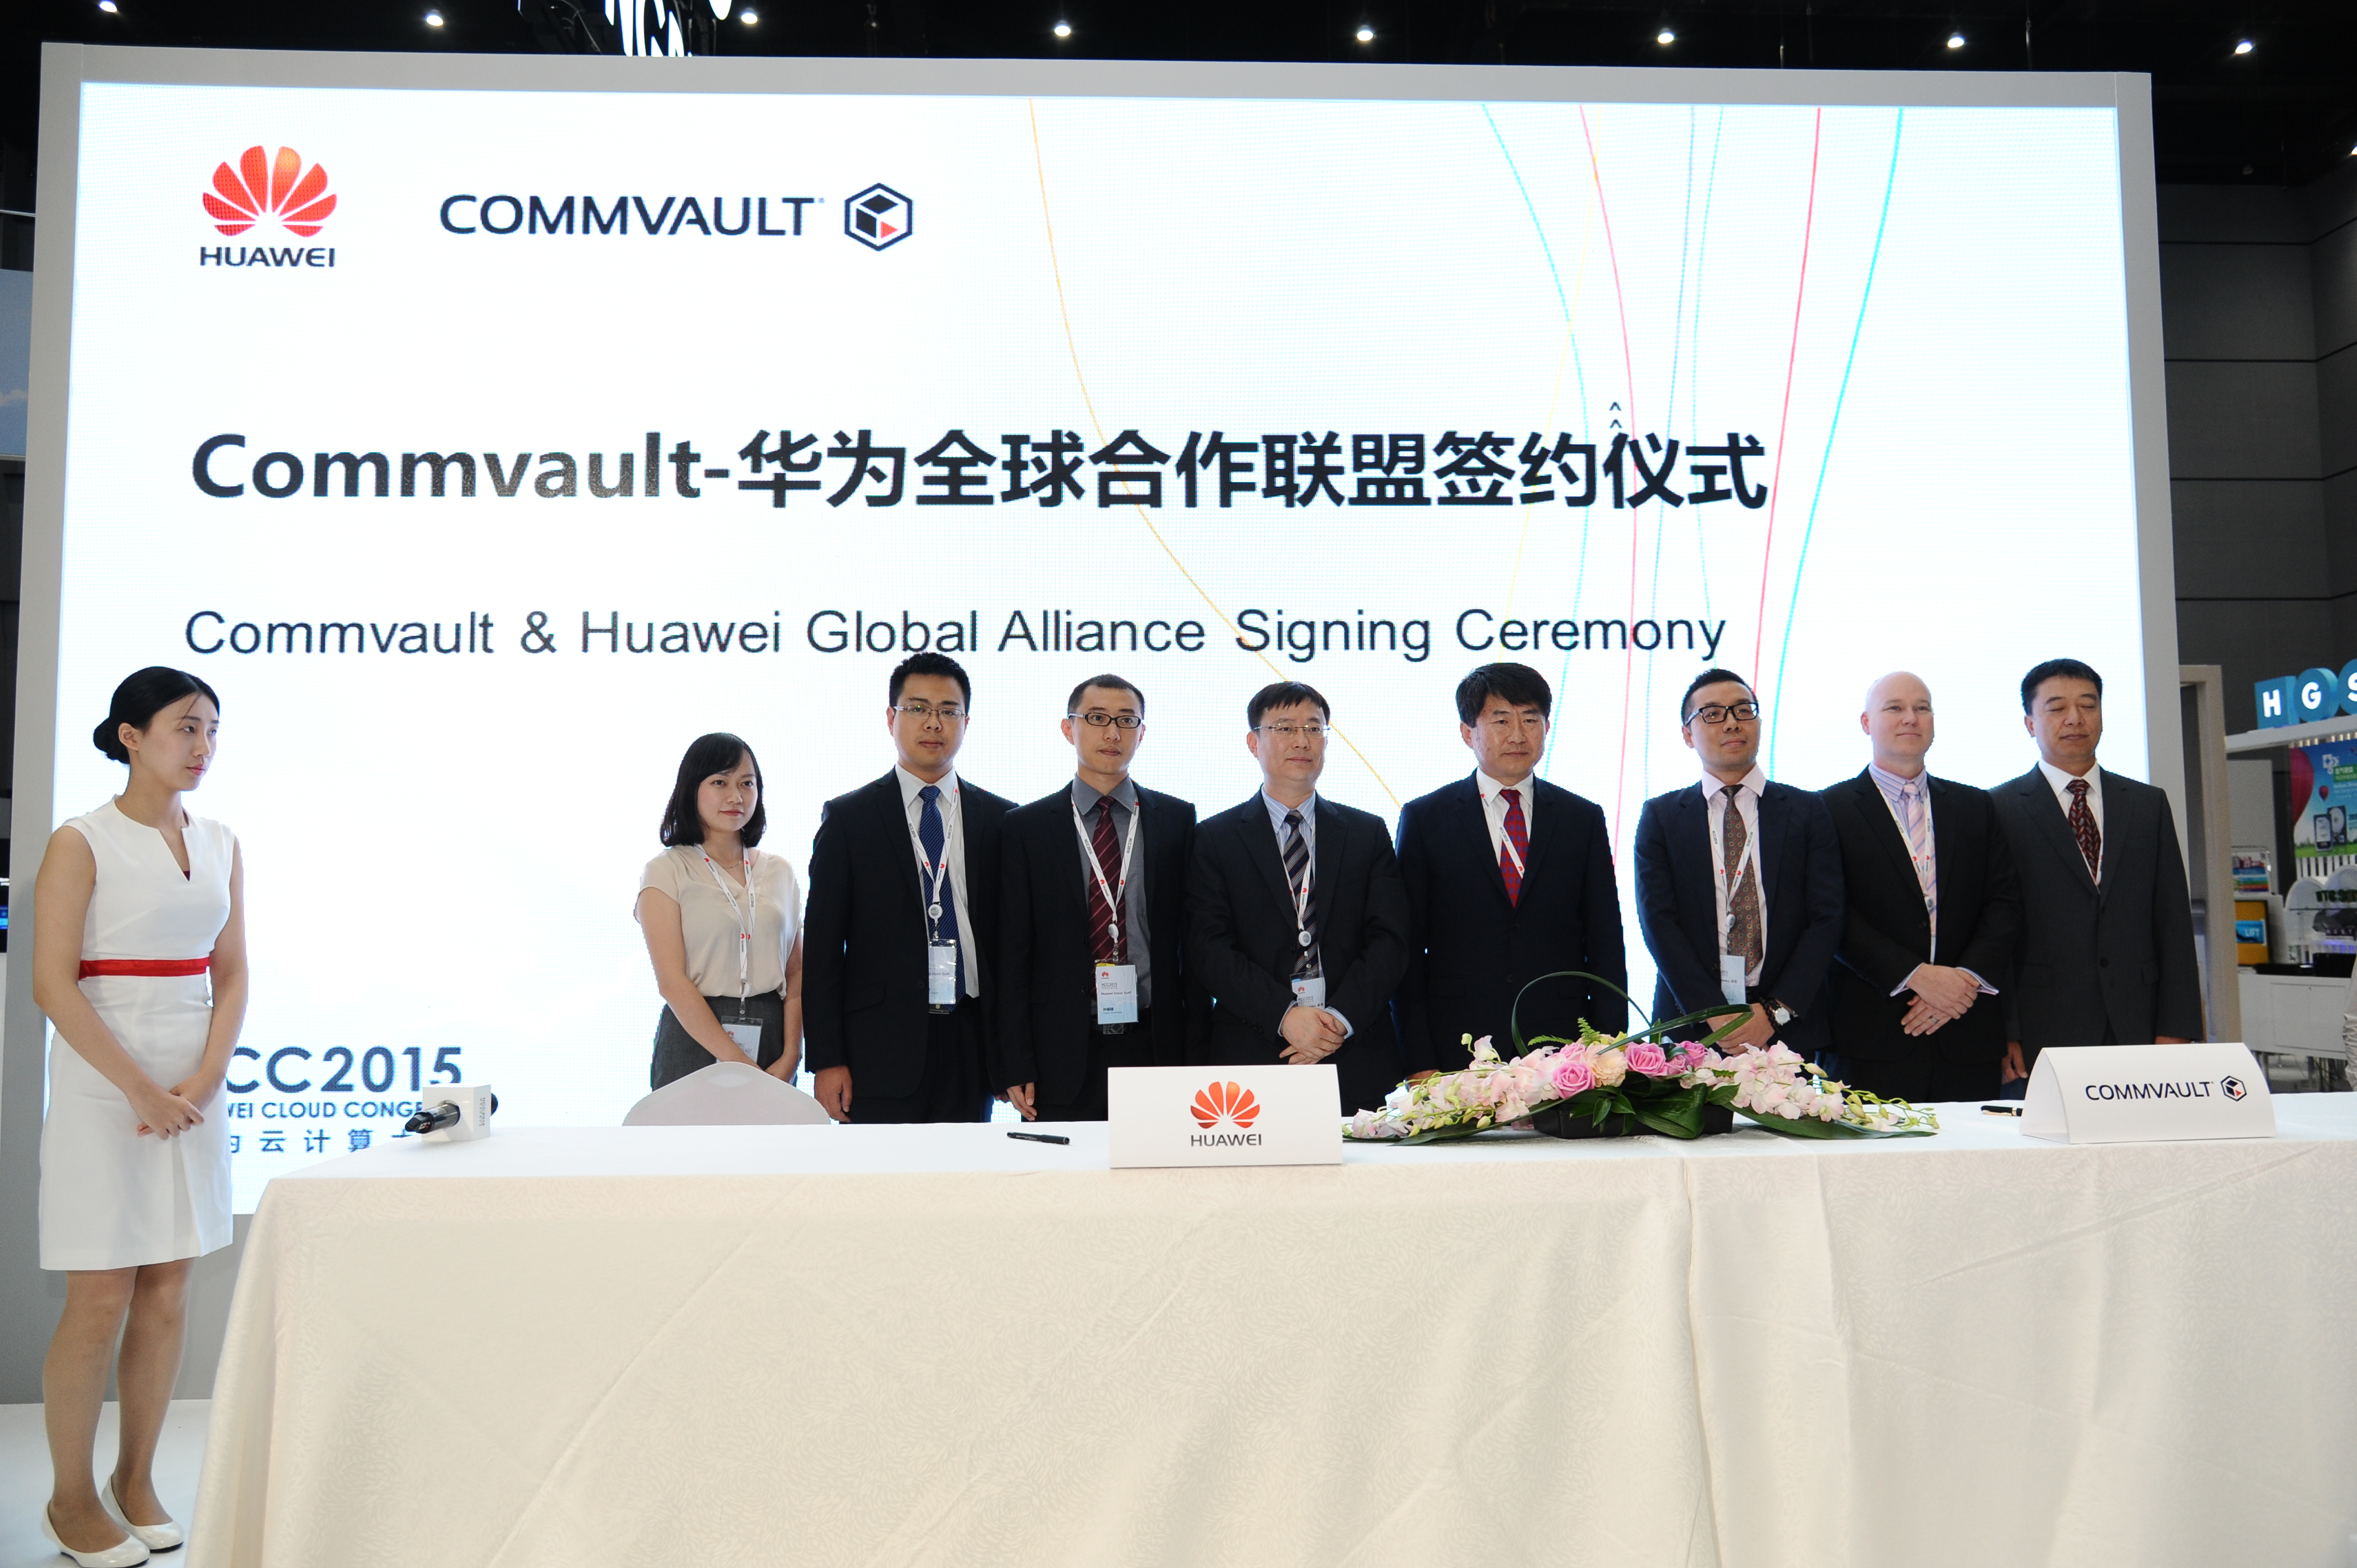  华为与美国Commvault签署全球合作联盟协议